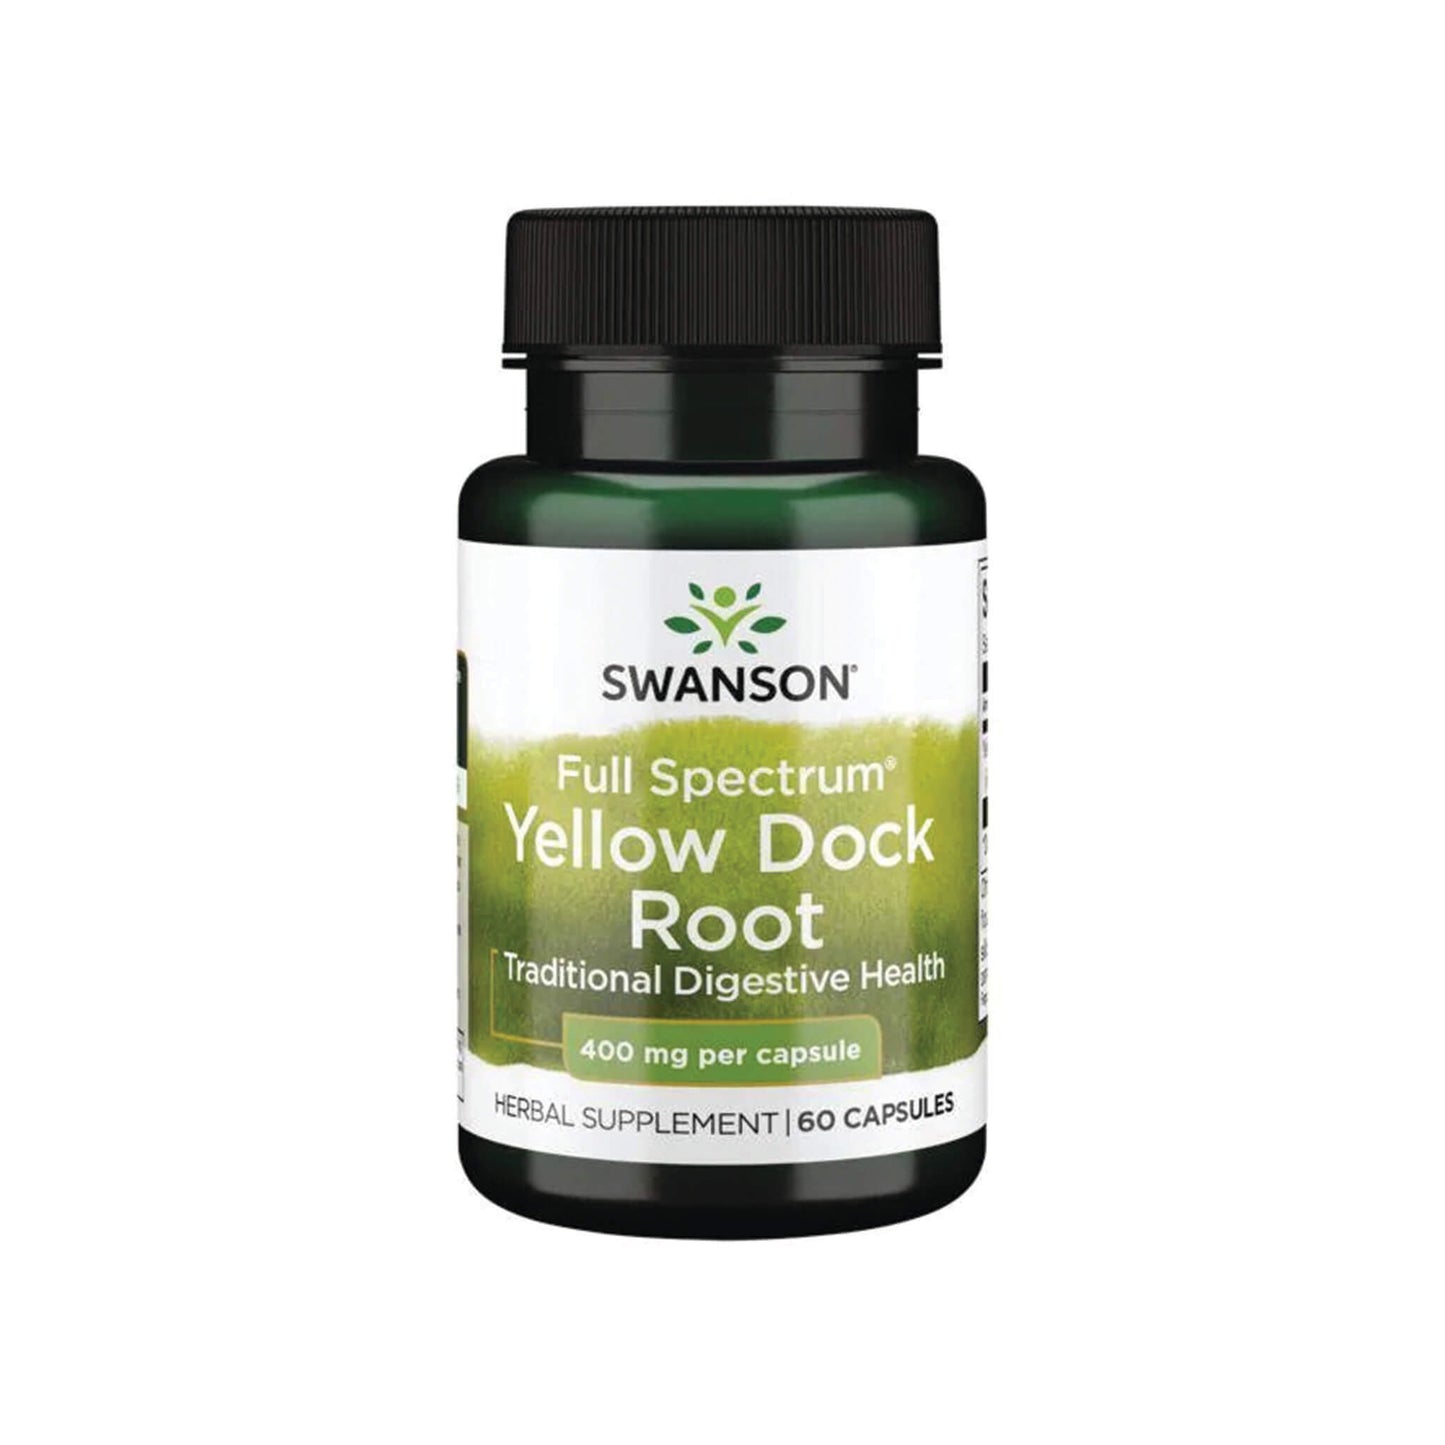 Swanson, Full Spectrum Yellow Dock Root, 400 mg - 60 Capsules